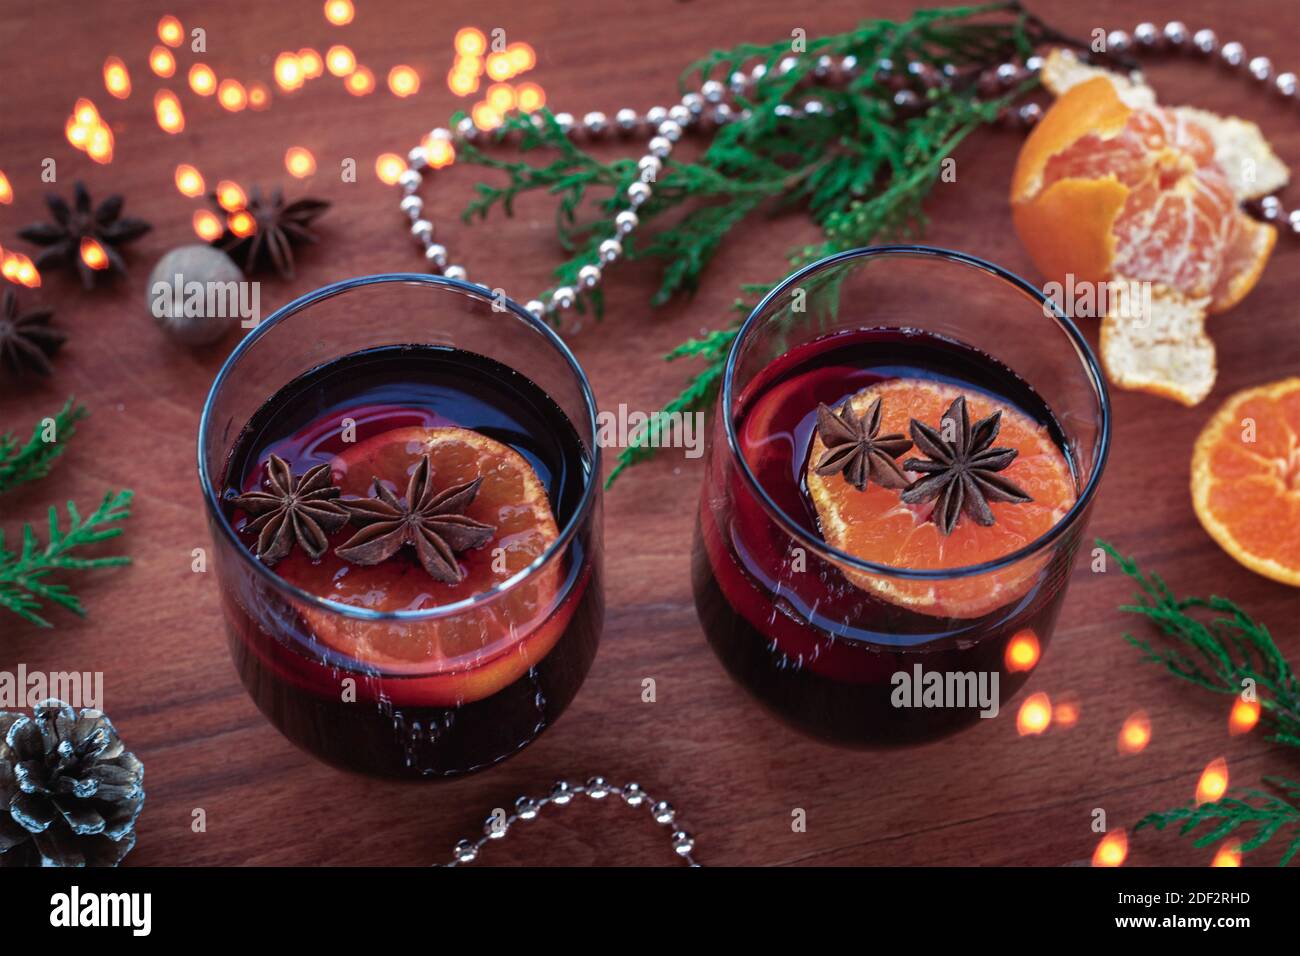 Deux verres de vin chaud aux agrumes, anis étoilé, muscade sur table en bois. Boisson de Noël de saison, décorations du nouvel an, vue du dessus. Banque D'Images